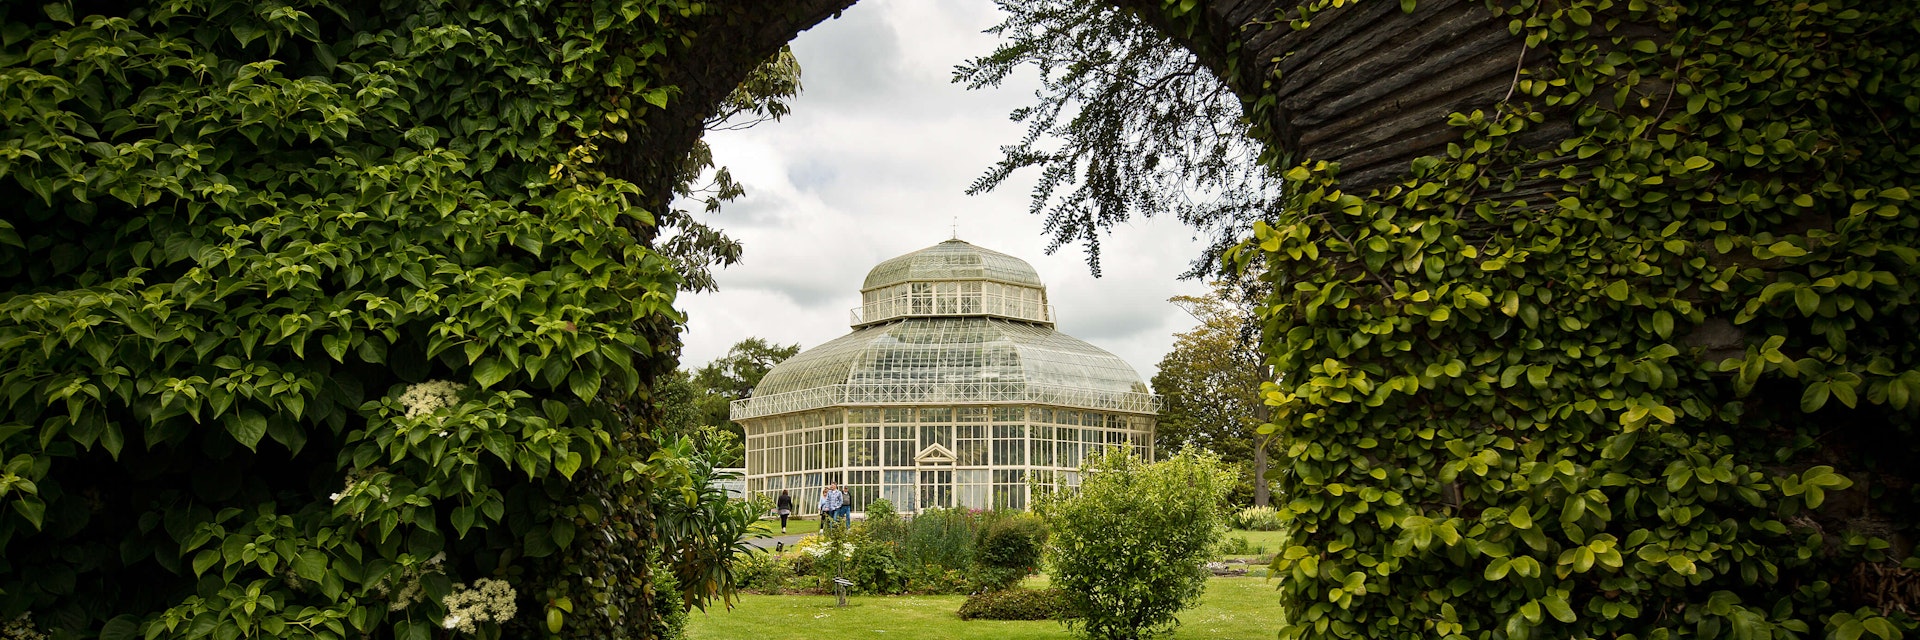 National Botanic Gardens in Dublin.